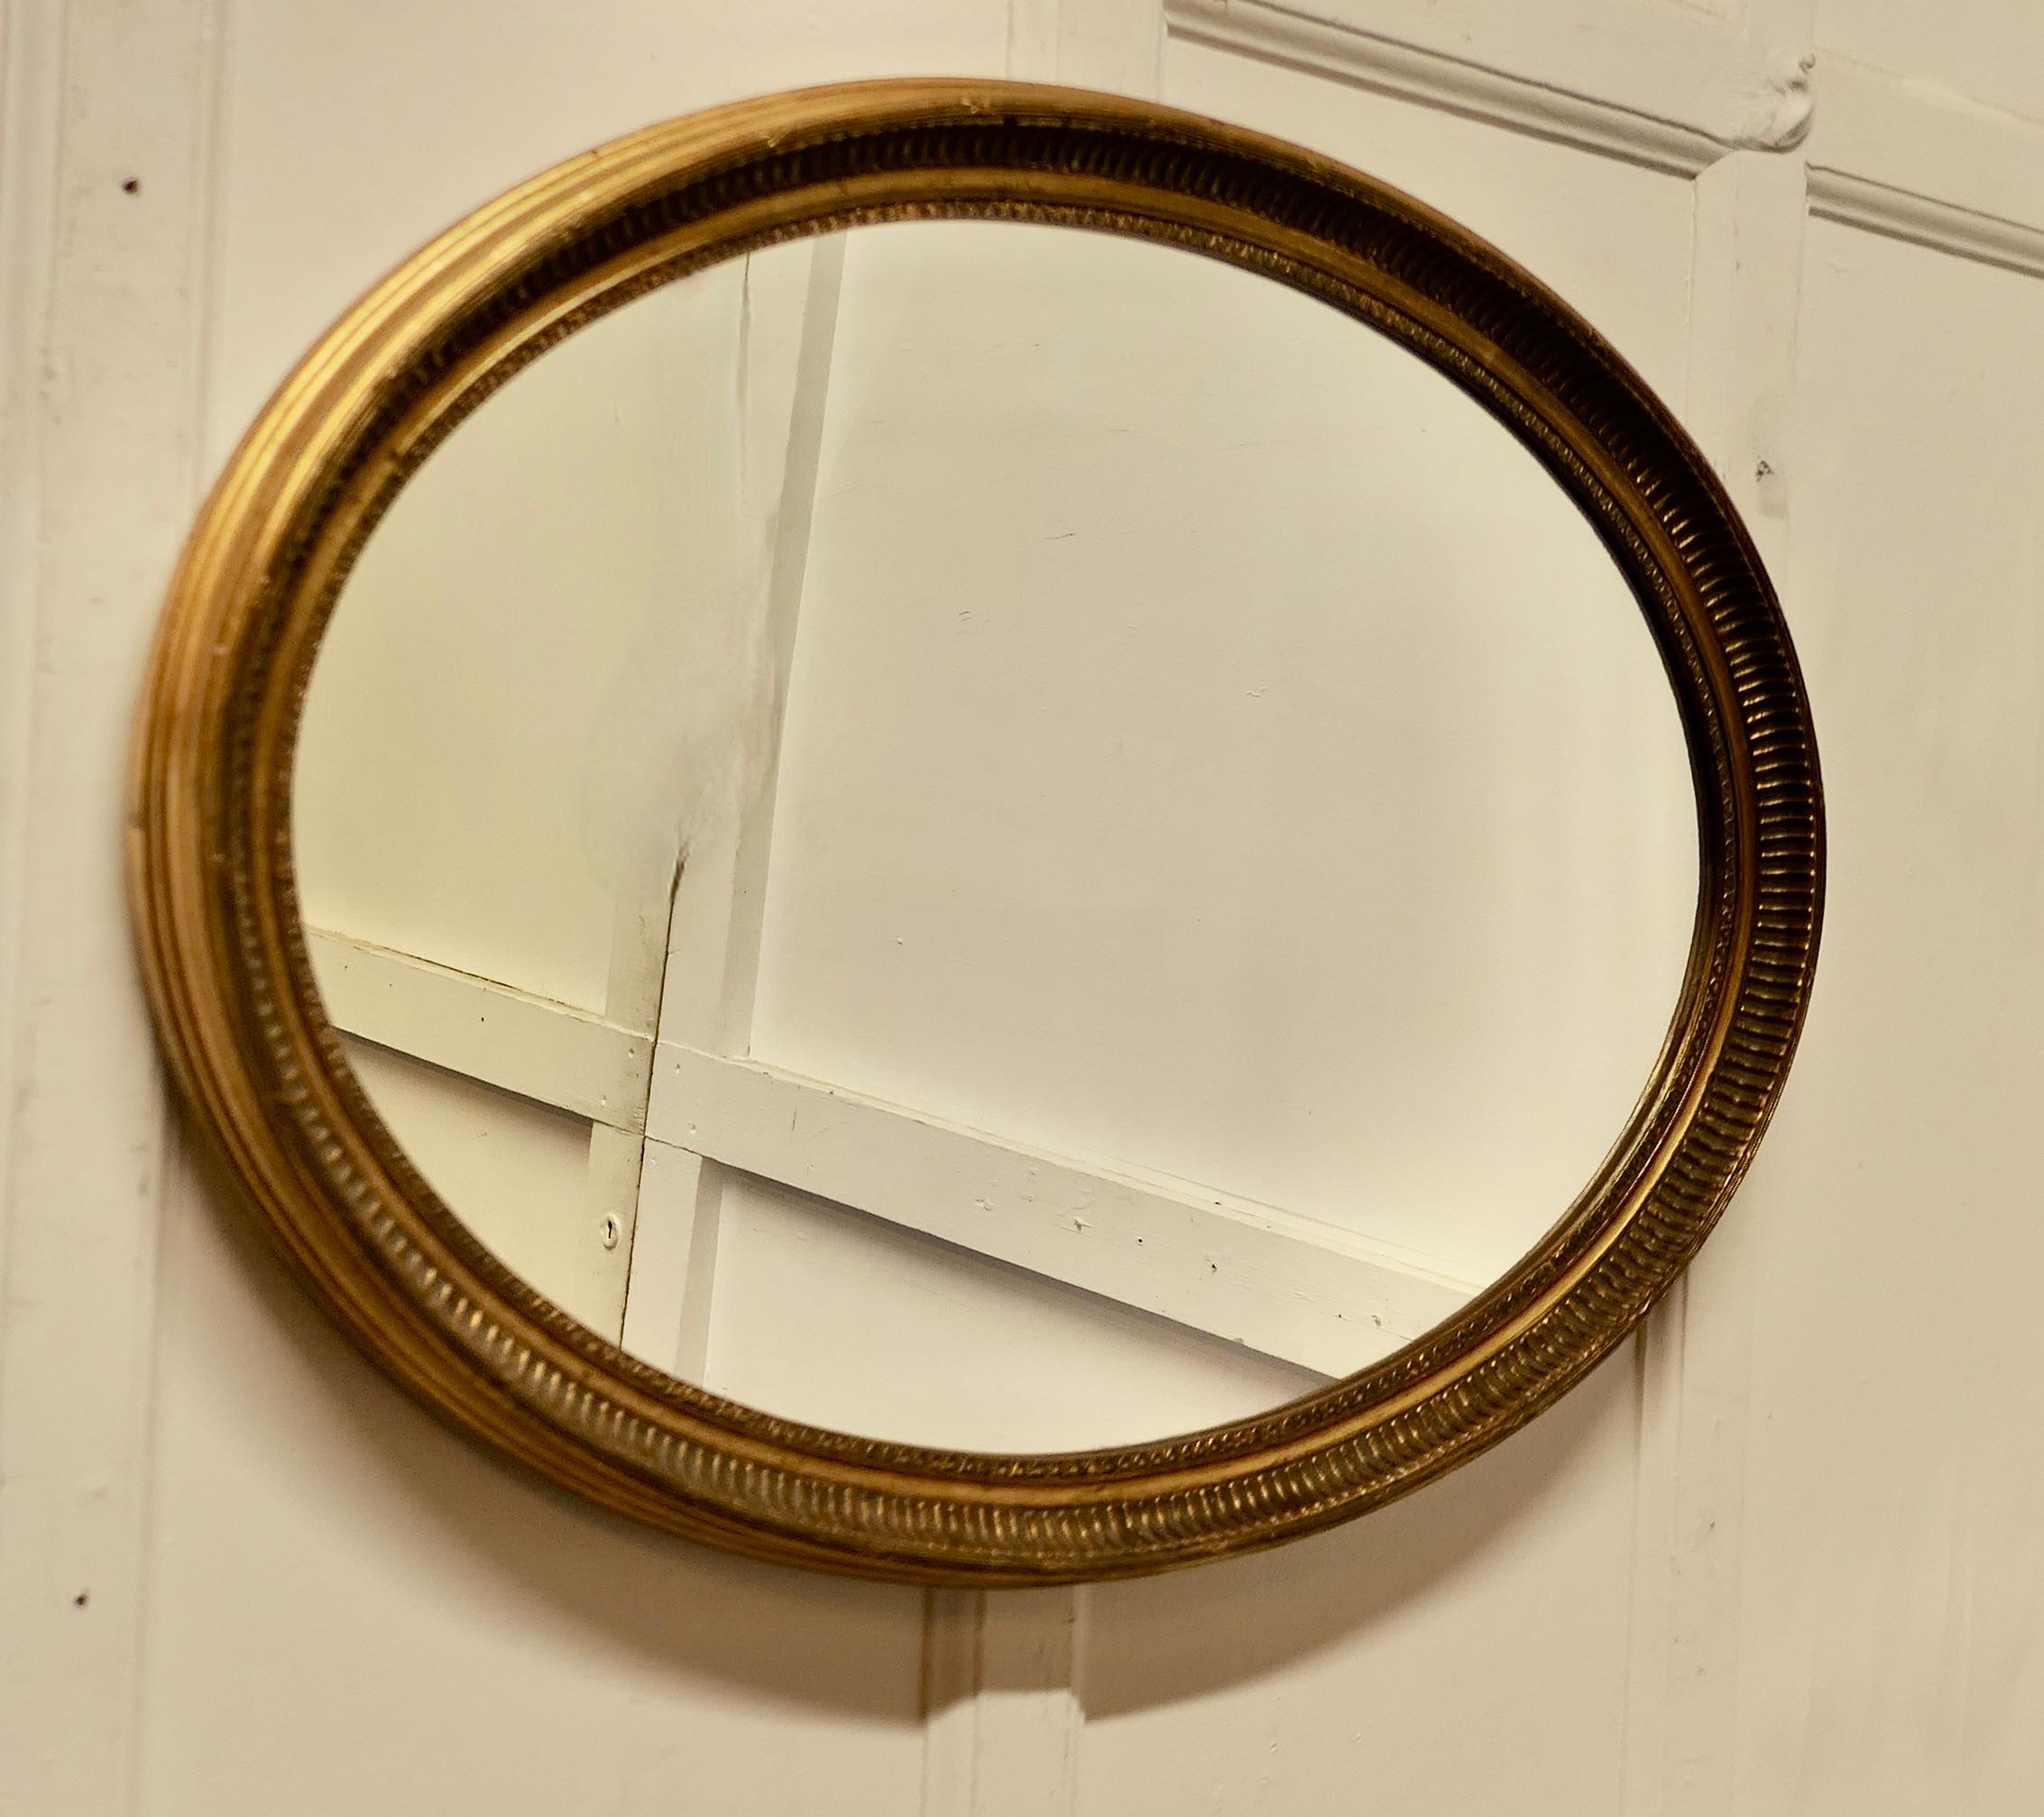 Grand miroir ovale doré

Ce miroir a un cadre ovale profondément moulé de 2 pouces de large, avec une bonne finition dorée.
Le cadre ovale est en très bon état, de même que le miroir.
Le miroir mesure 33